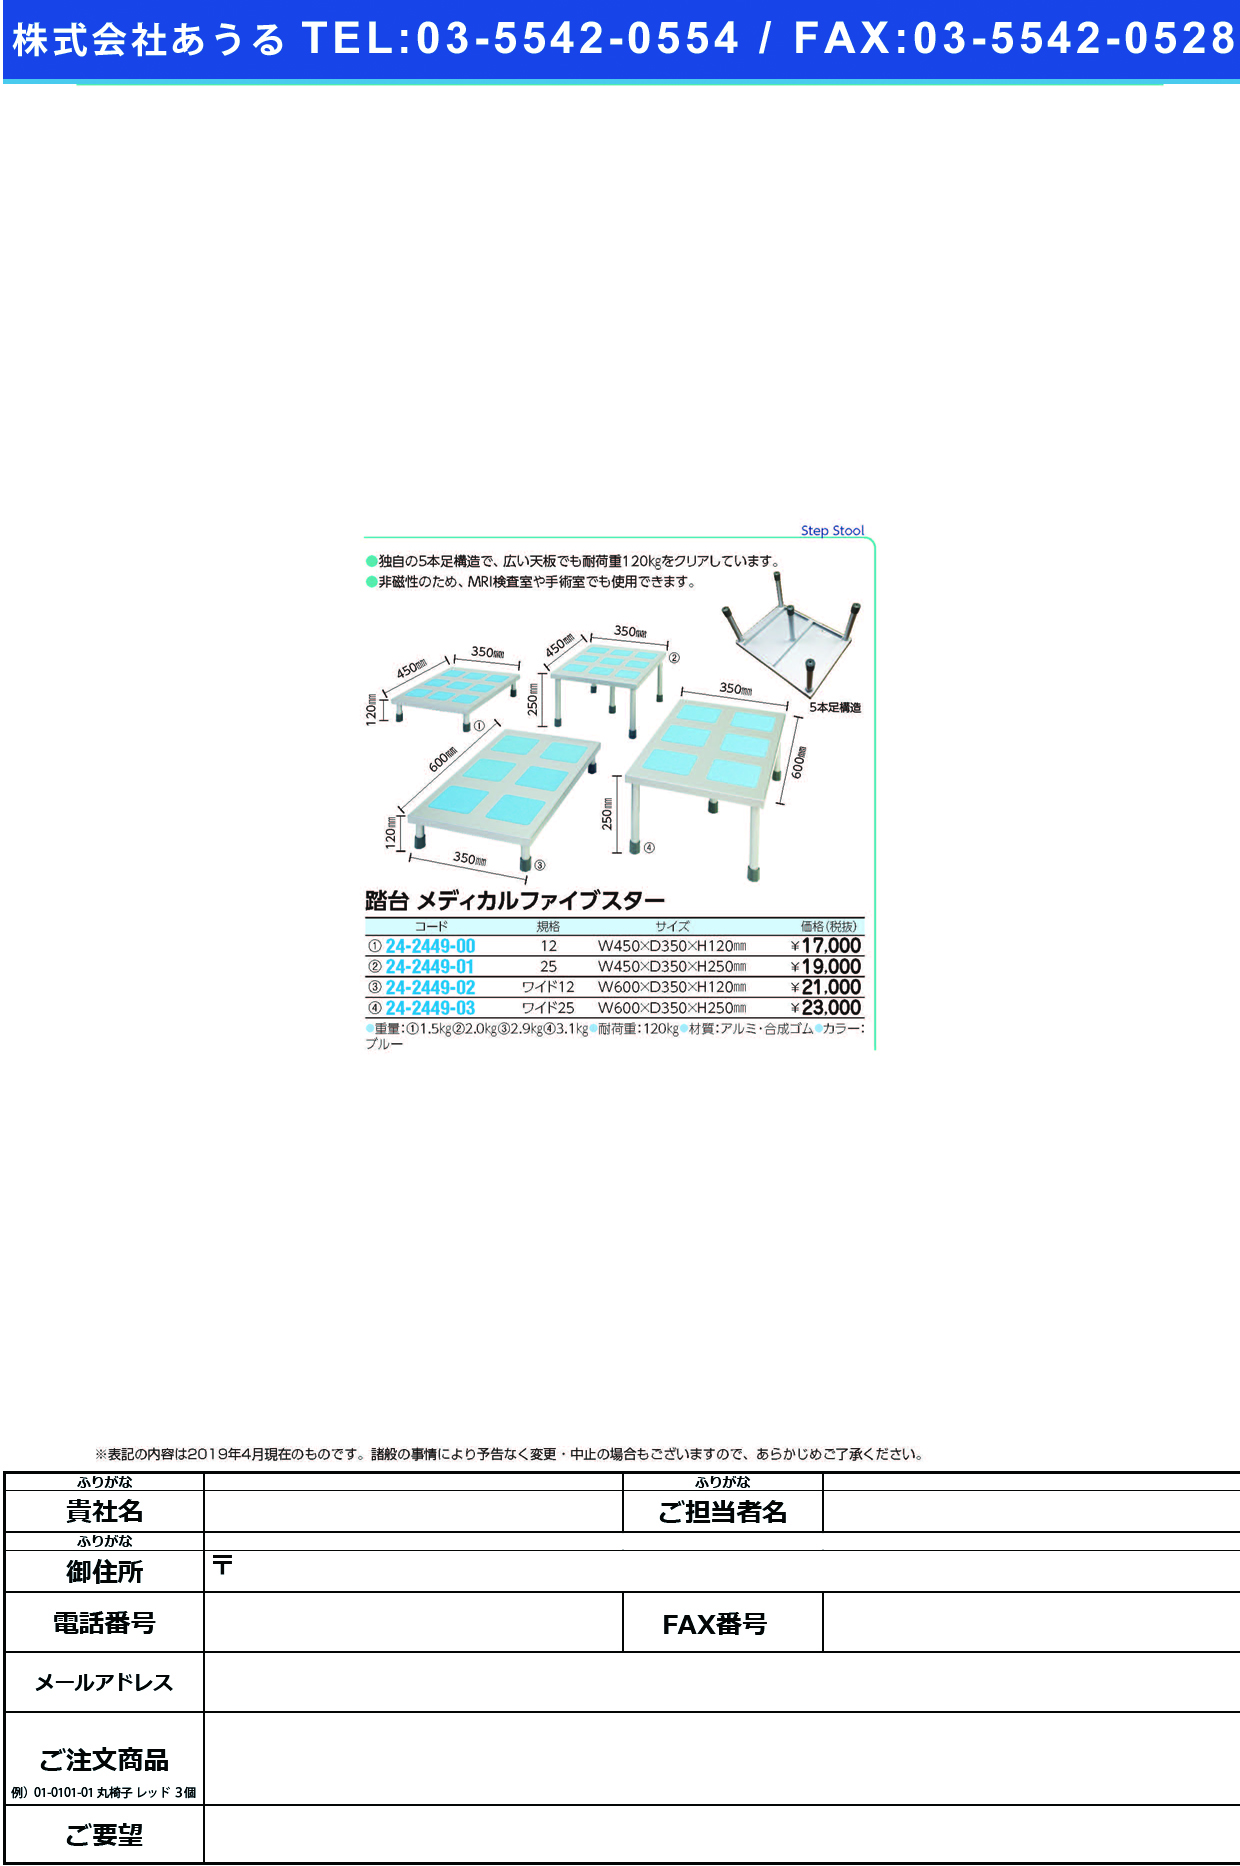 (24-2449-01)踏台メディカルファイブスター 25CM ﾌﾐﾀﾞｲﾒﾃﾞｨｶﾙﾌｧｲﾌﾞｽﾀｰ【1台単位】【2019年カタログ商品】